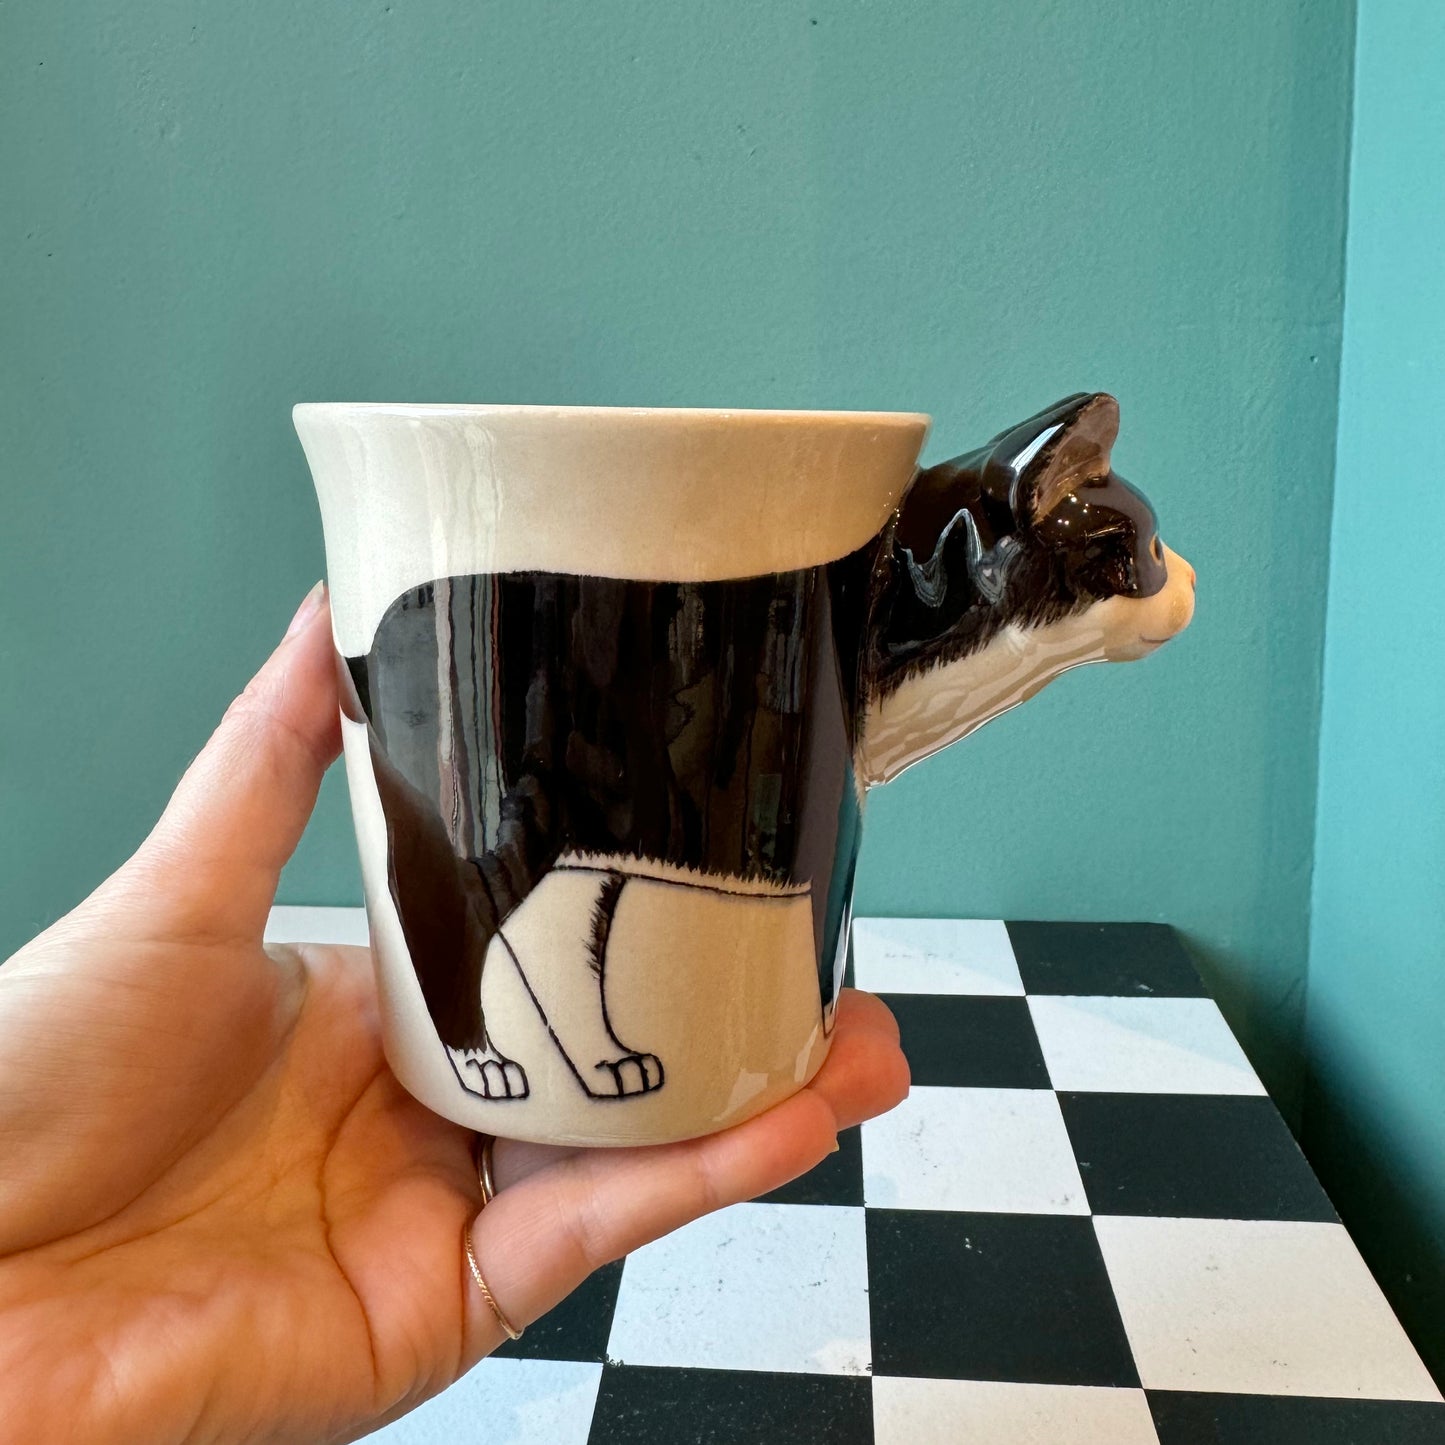 Tuxedo Black Cat Ceramic Mug